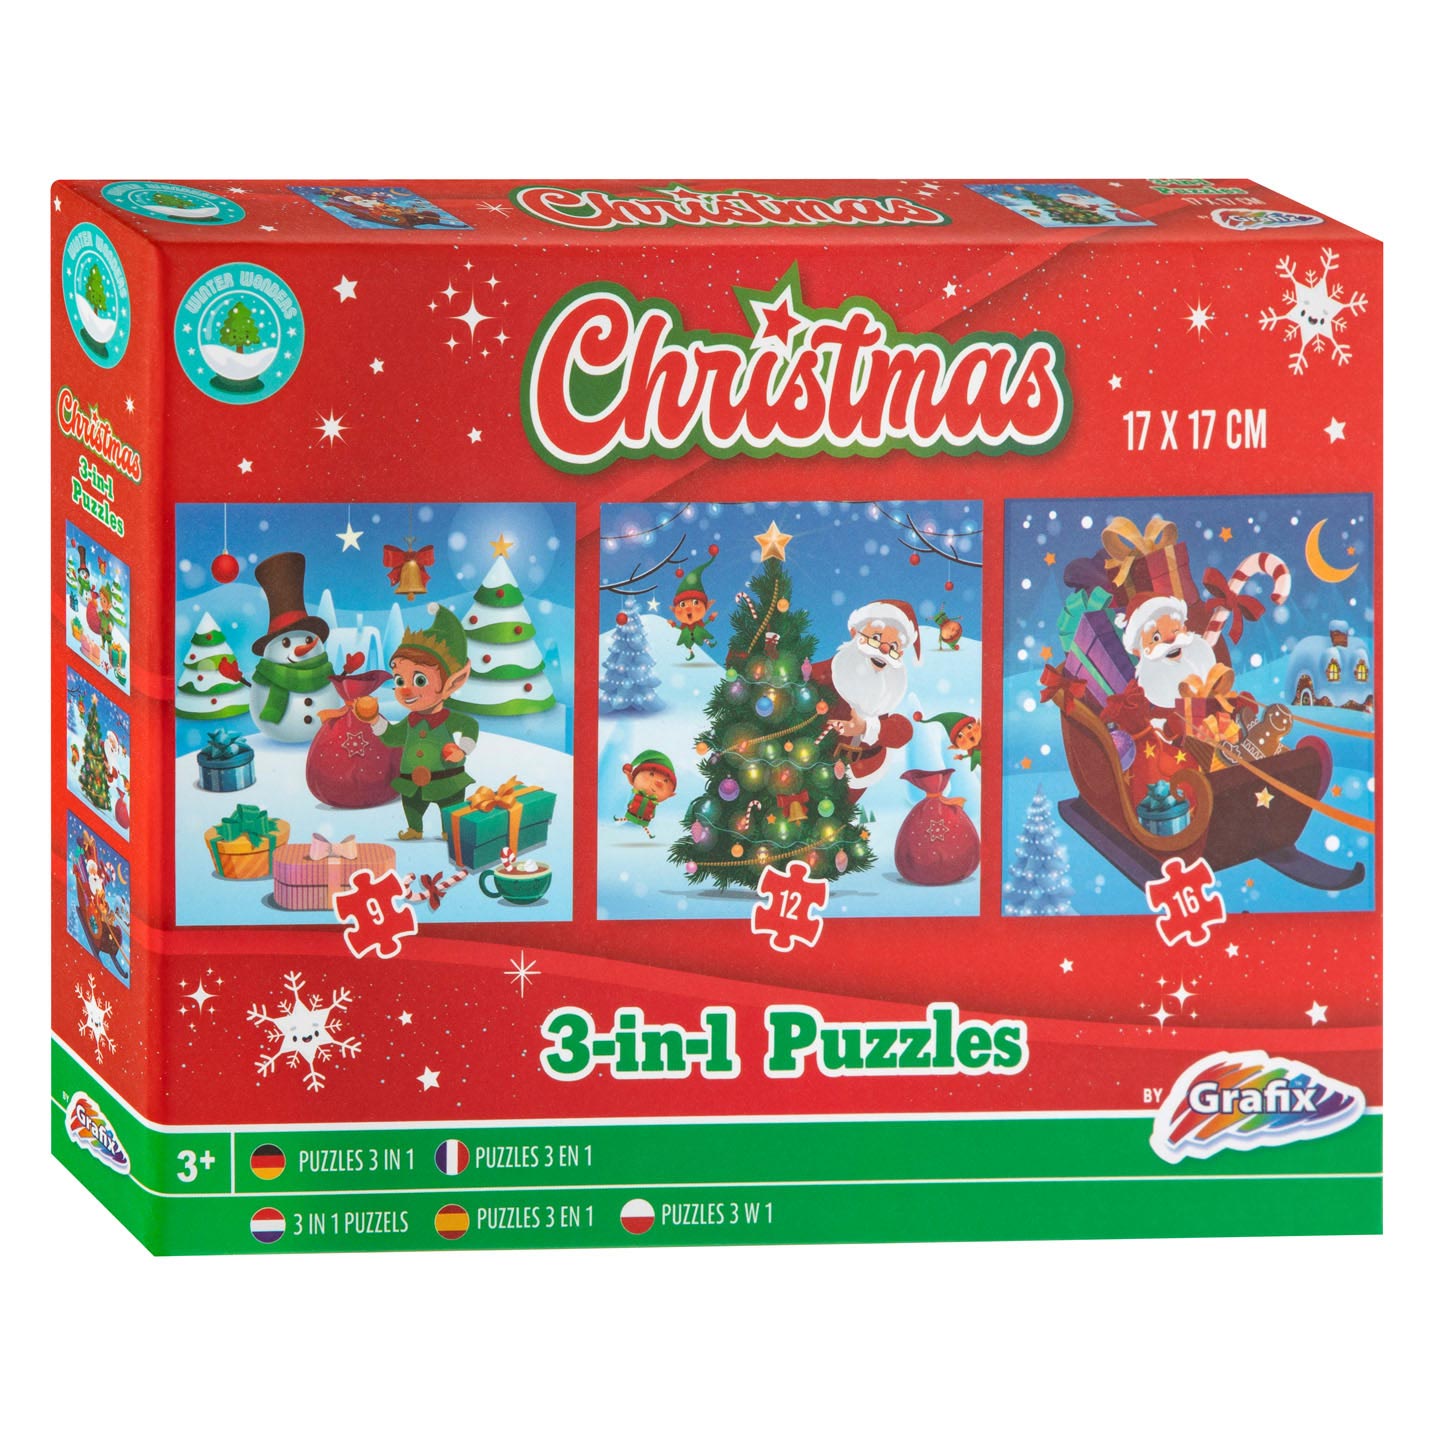 Acheter Mini Puzzle Noël, 24pcs. en ligne?